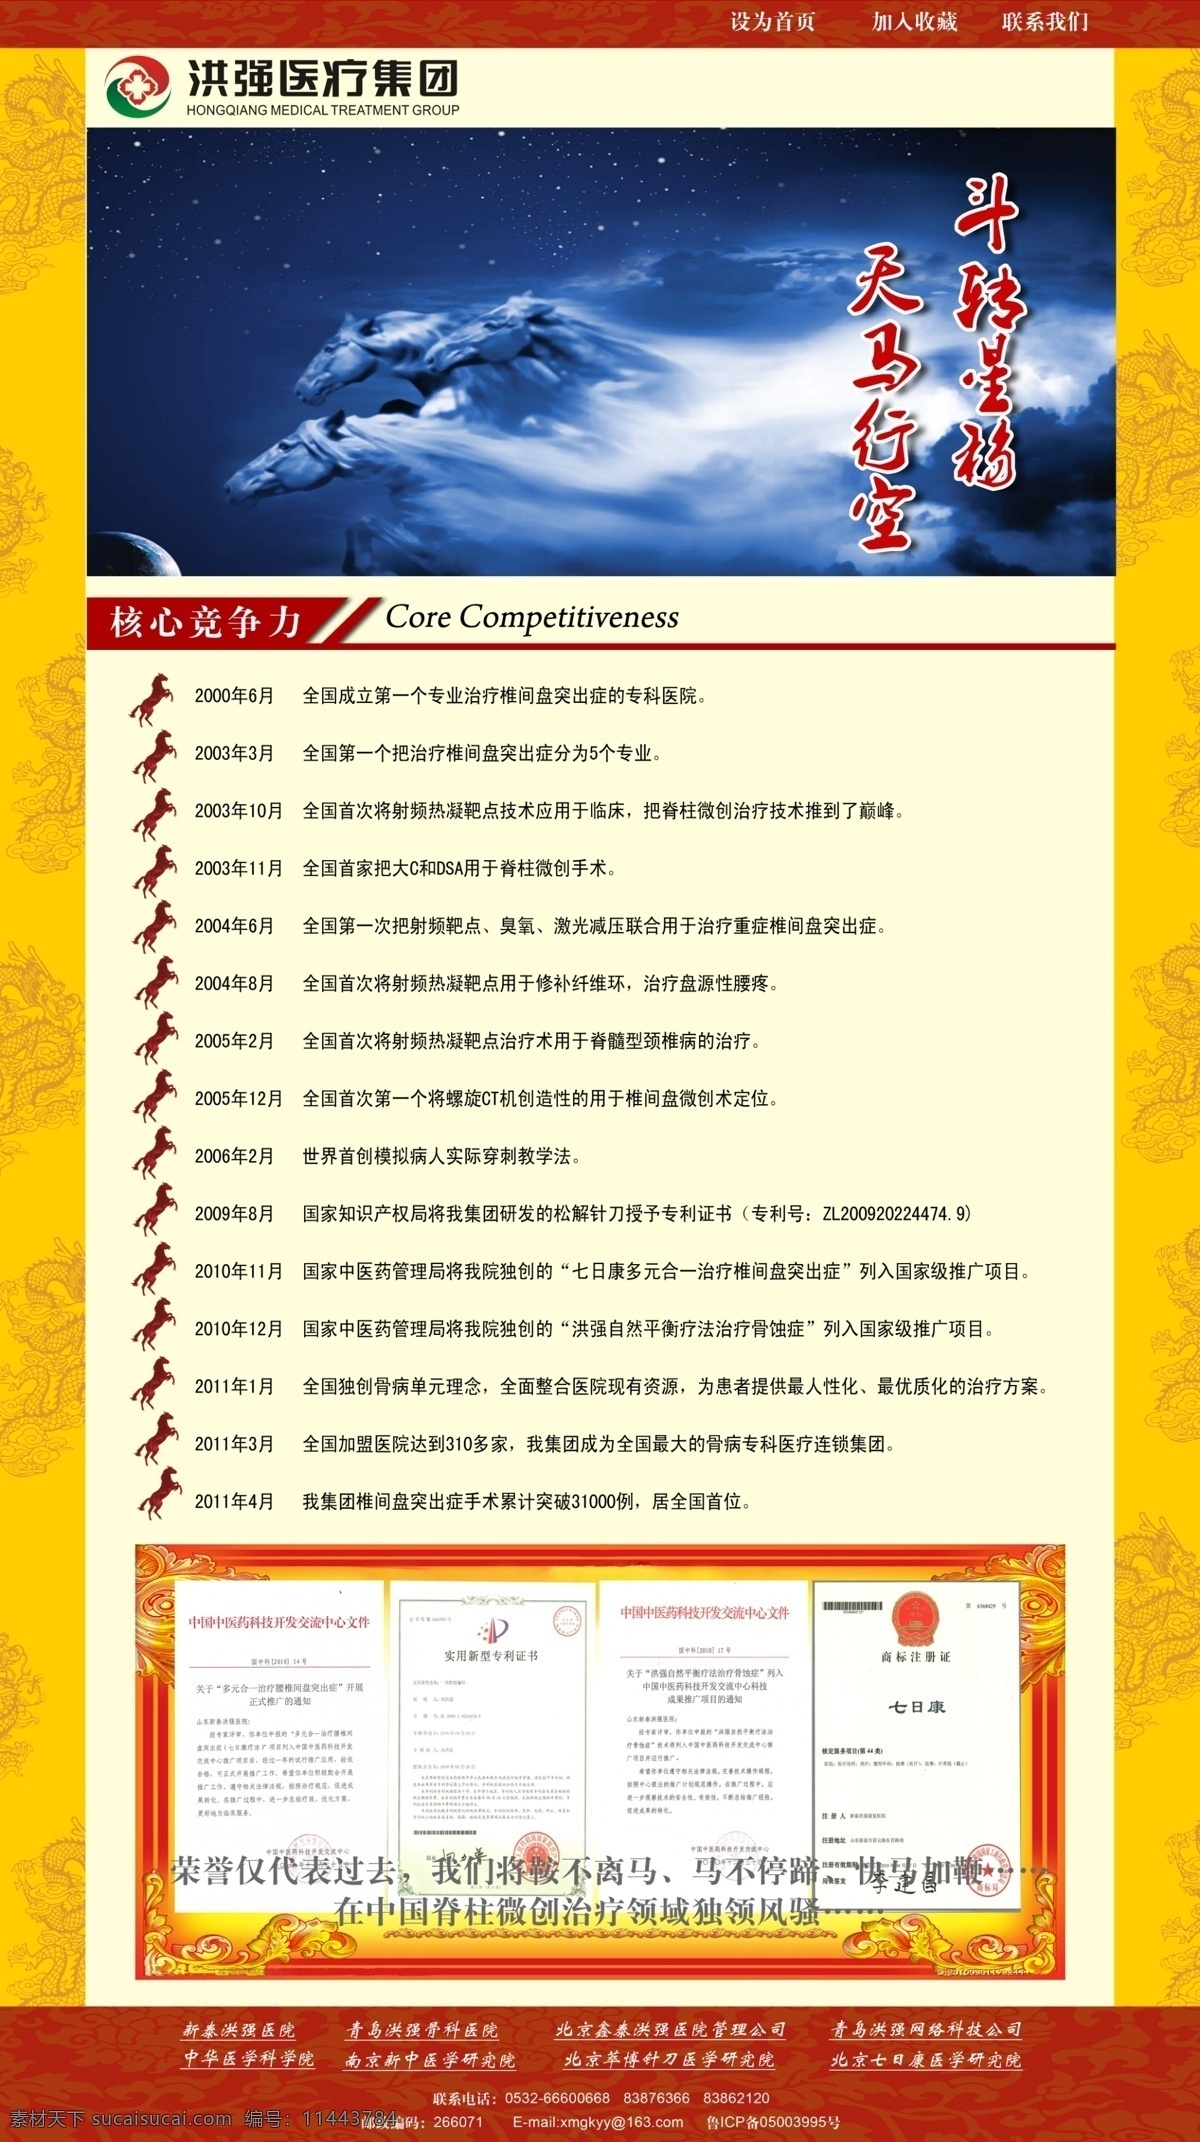 黄色底纹 龙 天马行空 网页 网页模板 网站模板 源文件 中国风 集团网页模版 马 核心竞争力 中文模版 网页素材